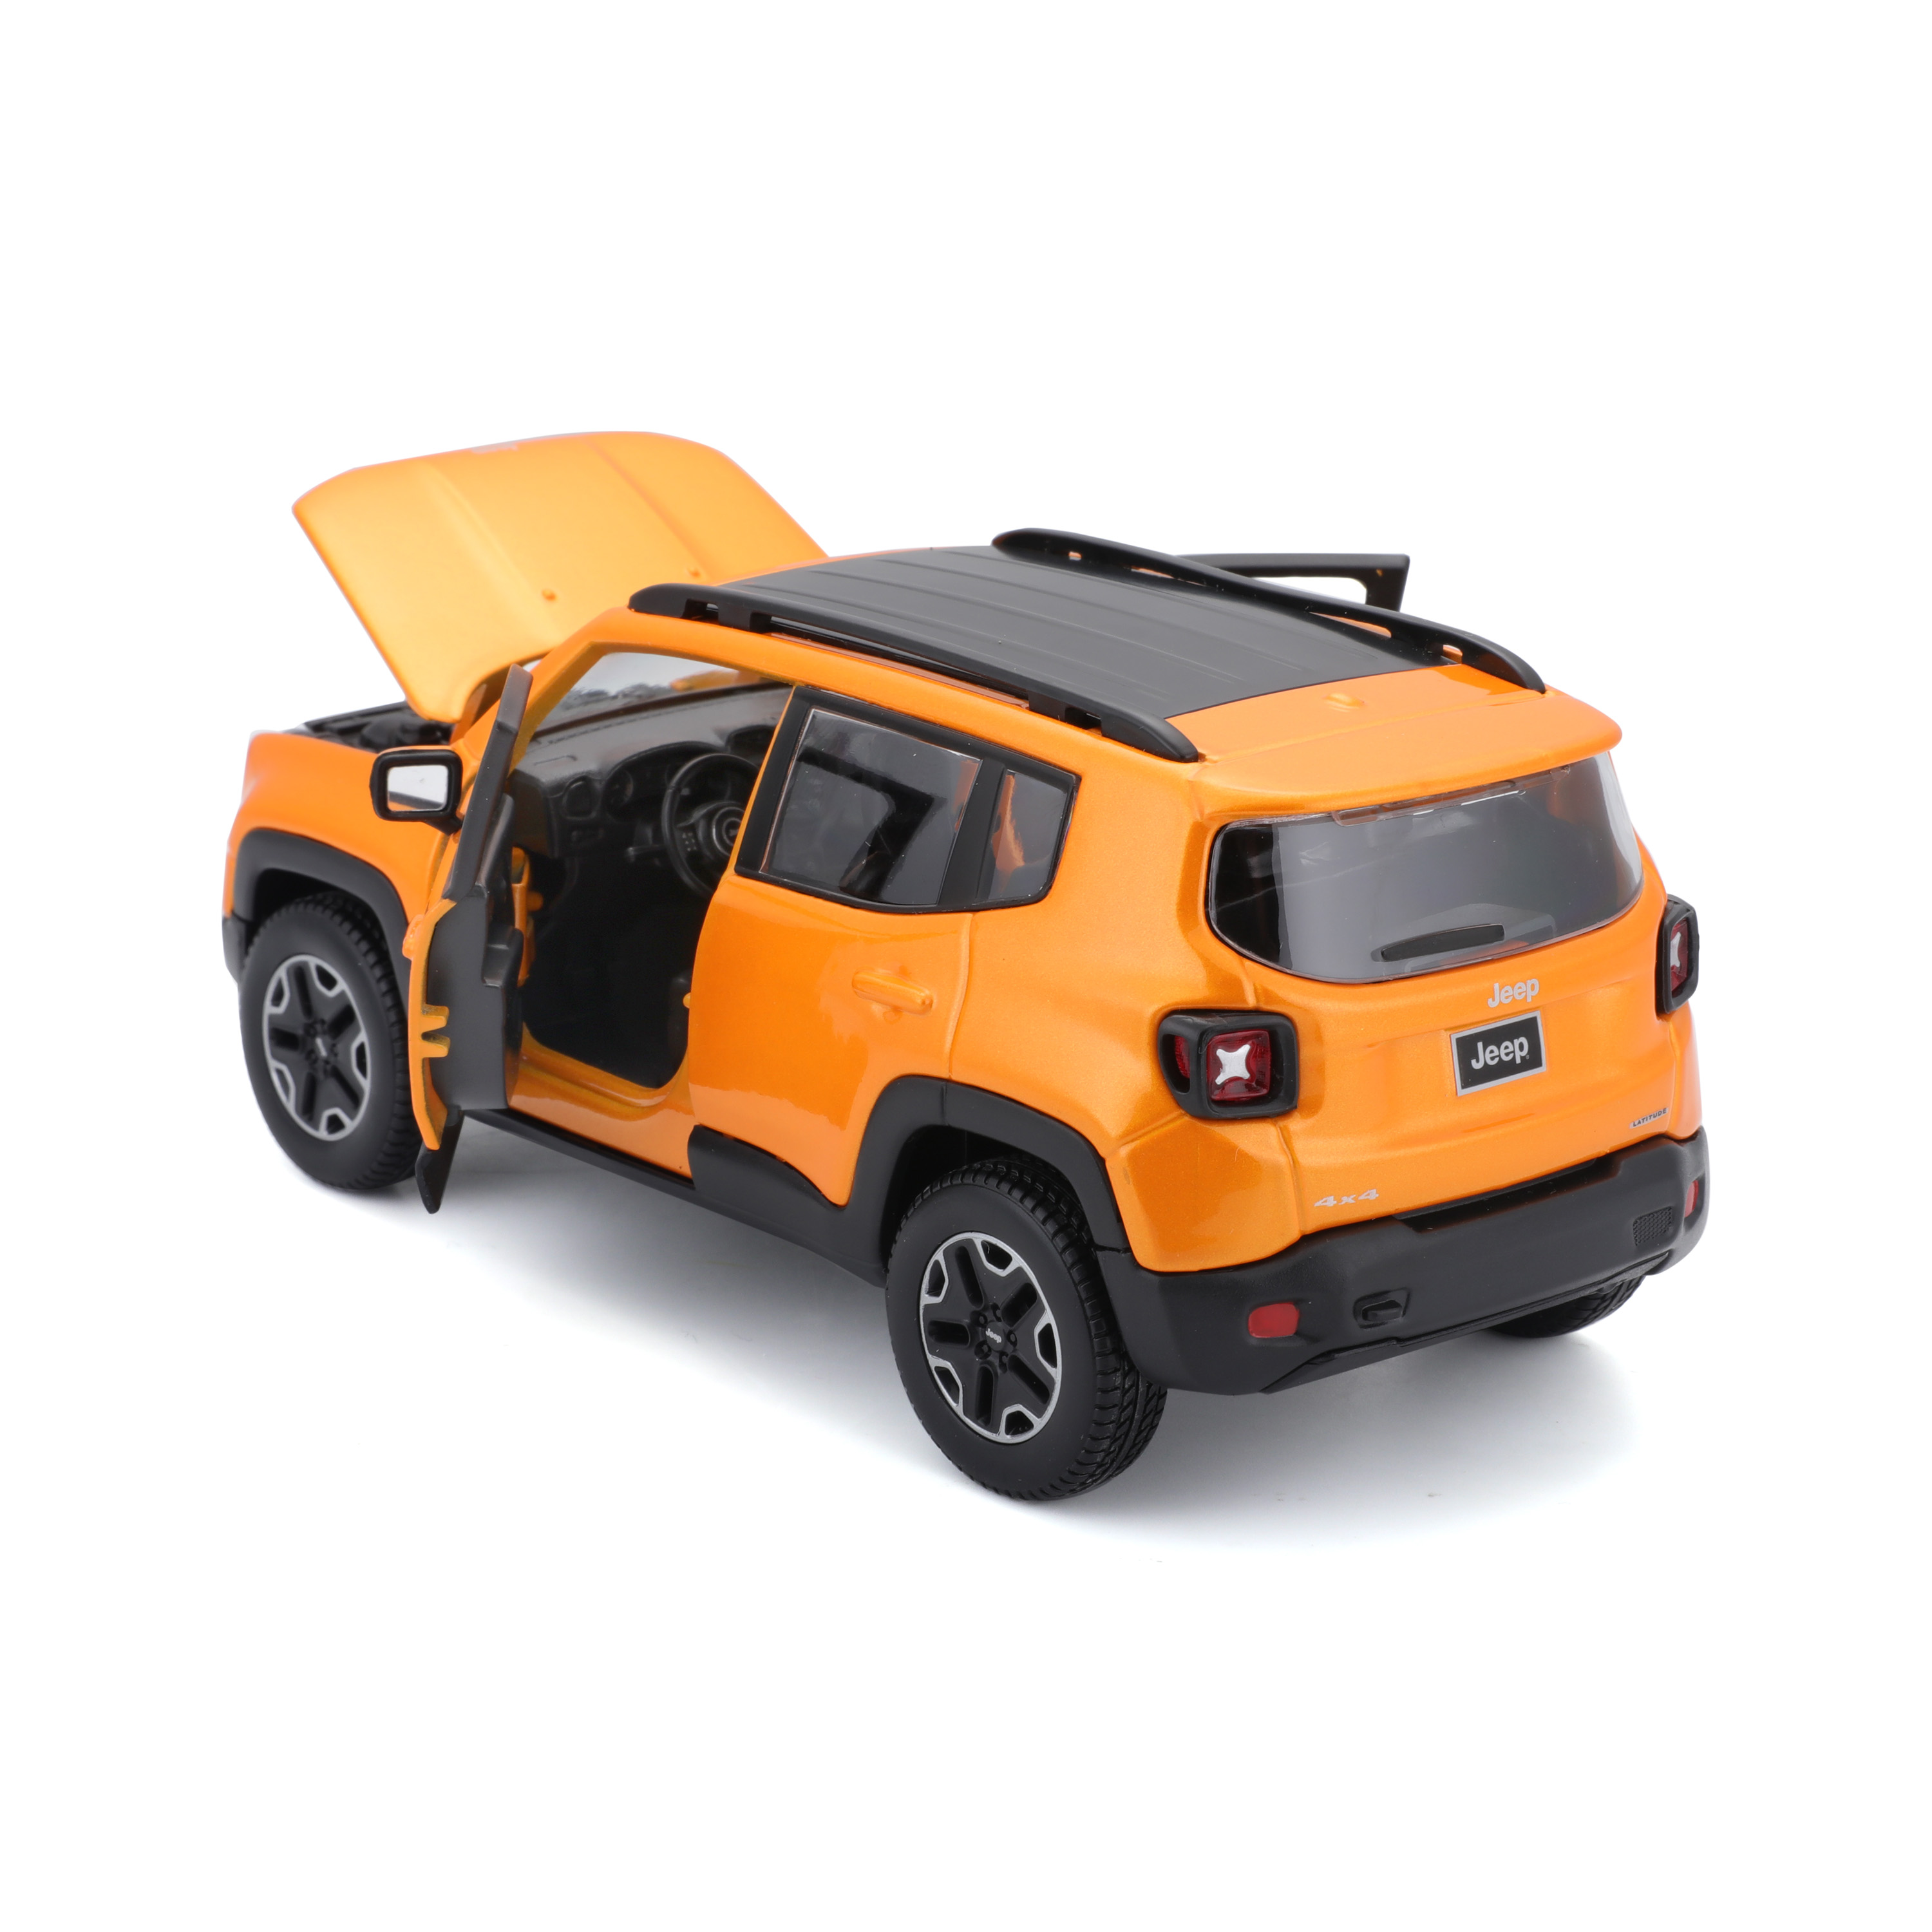 Ігрова автомодель Maisto Jeep Renegade, помаранчевий металік, 1:24 (31282 orange) - фото 4